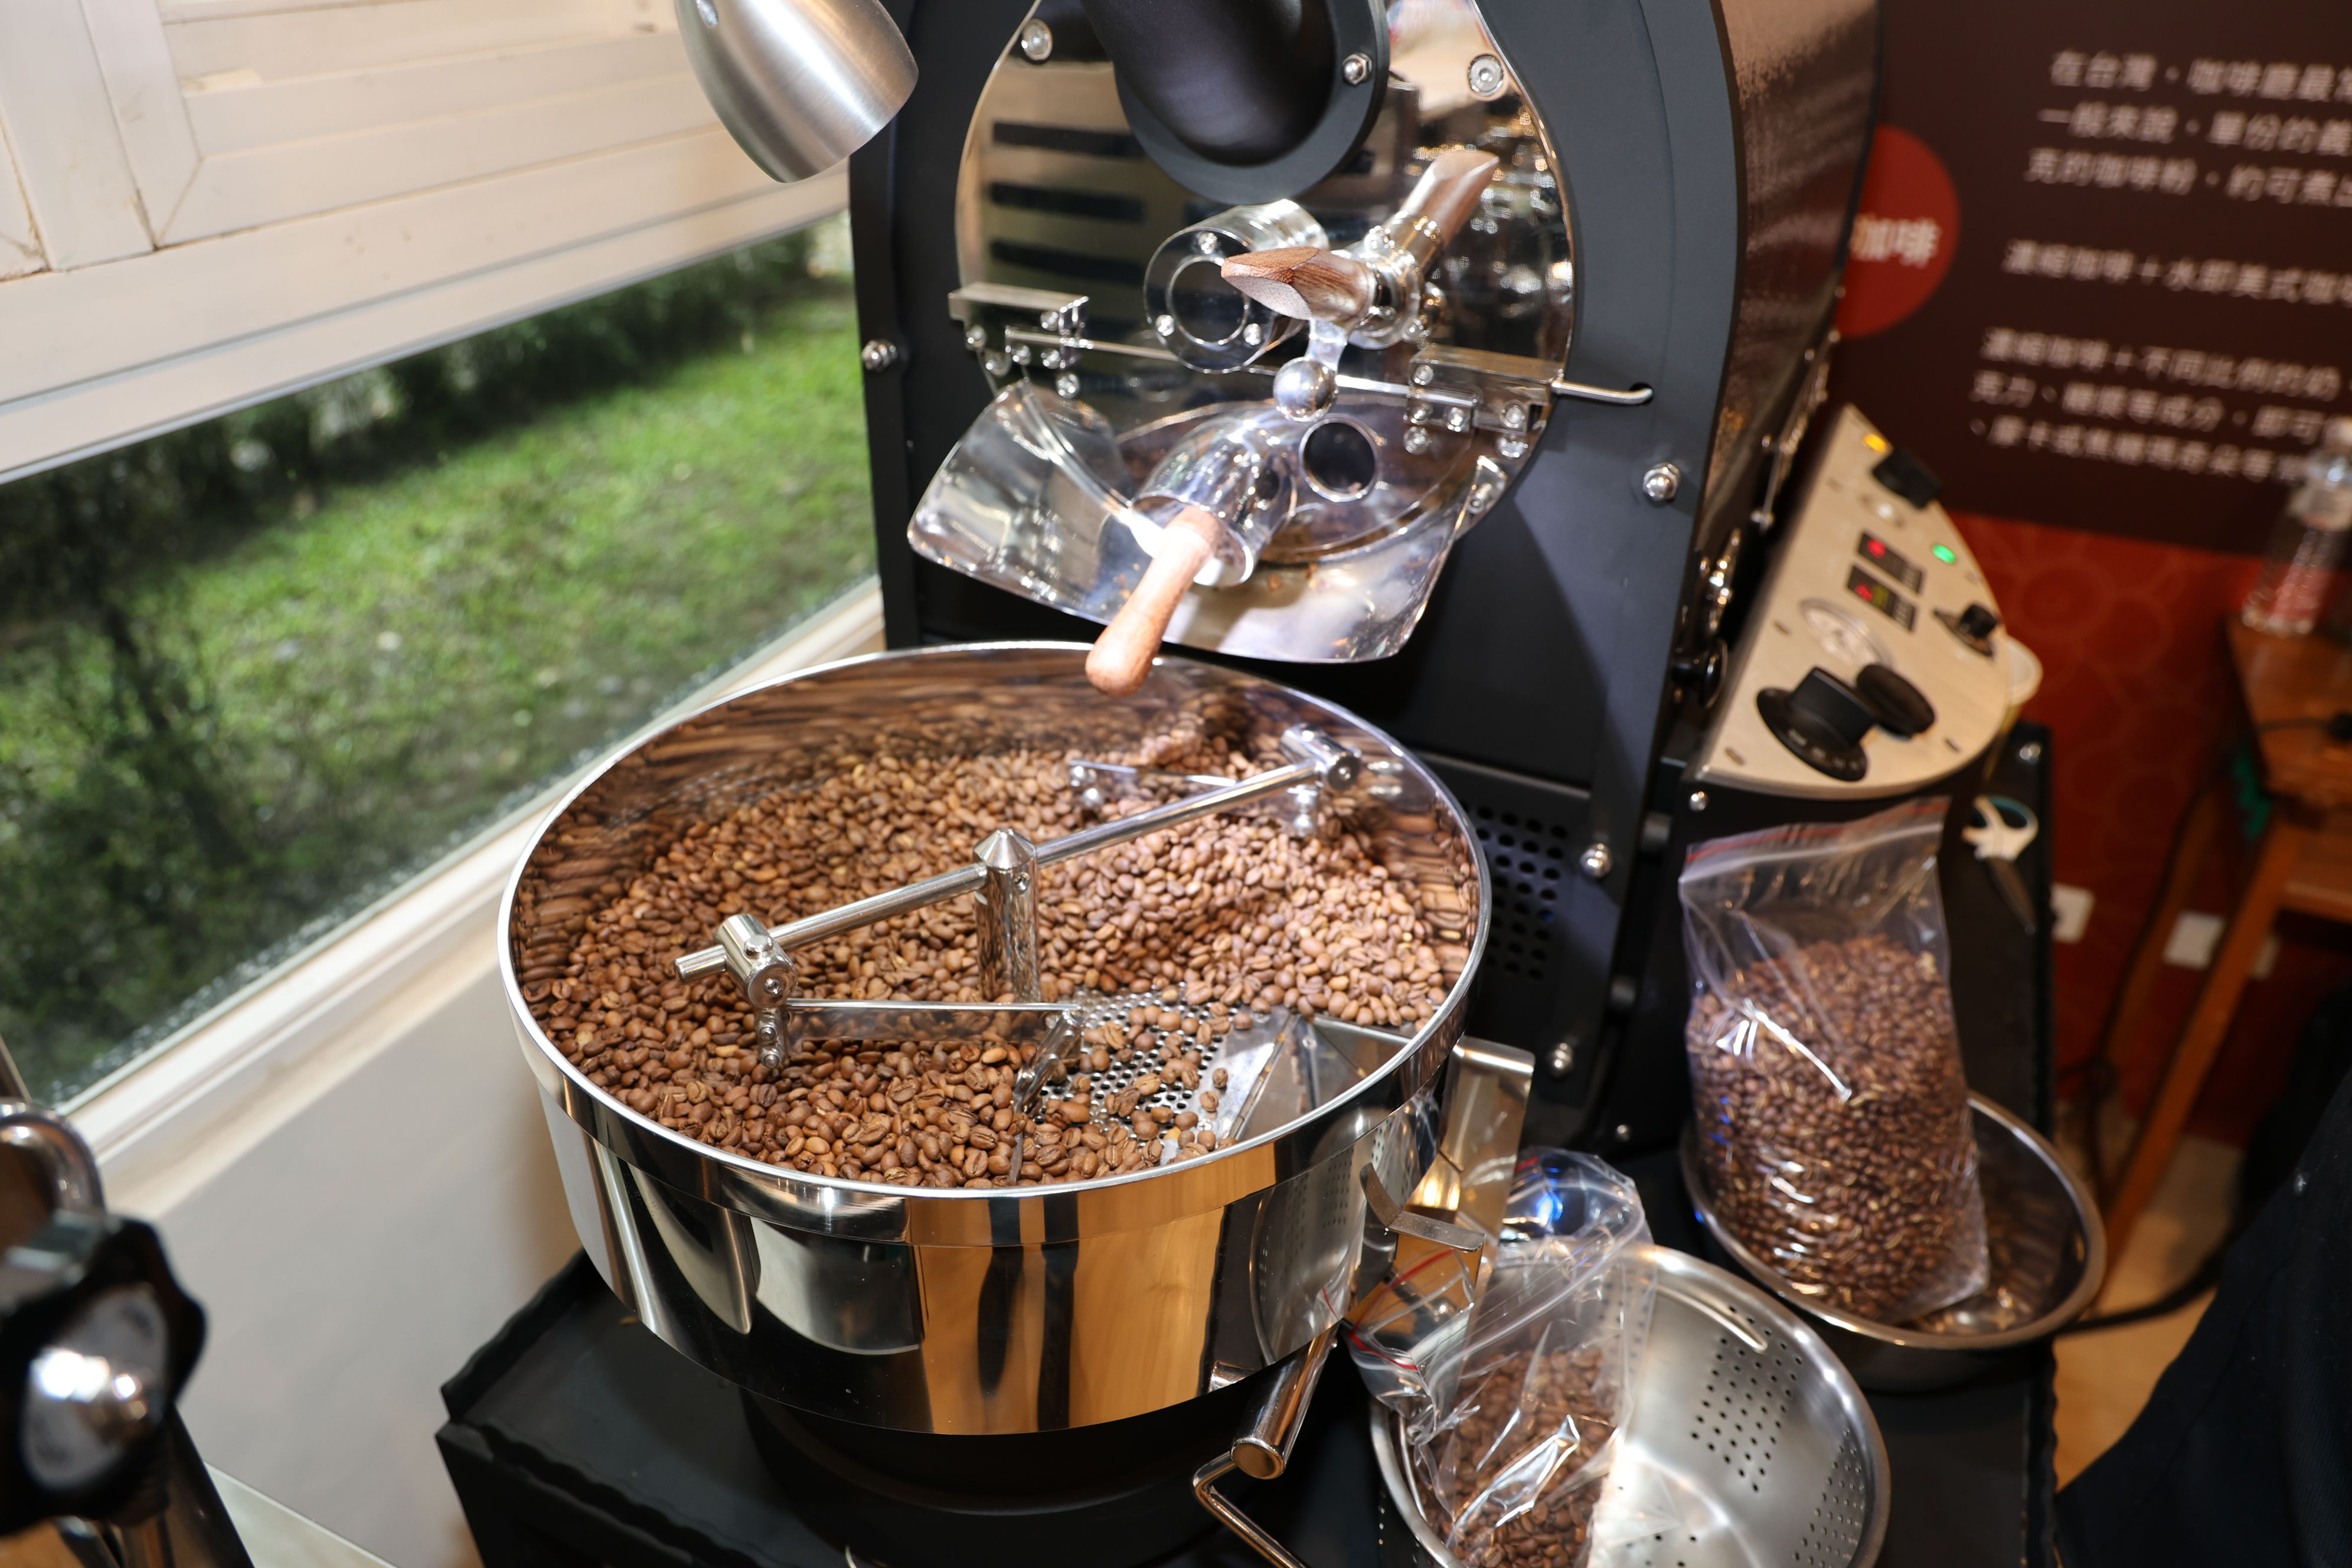 埔里國中職探中心咖啡教室添利器 獲贈專業烘豆機與義式咖啡沖泡機